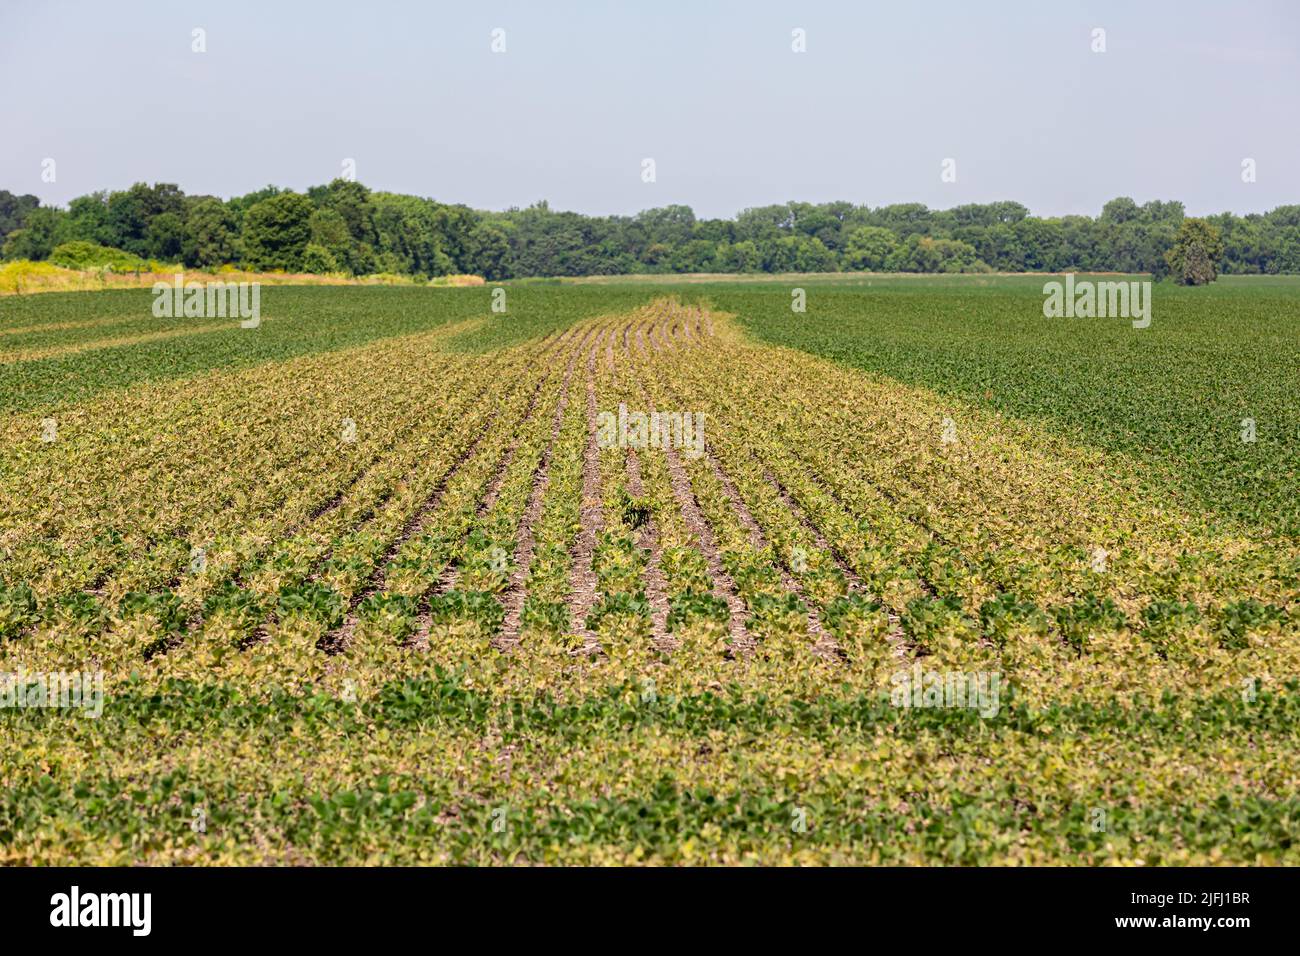 El campo de soja se torna marrón con daño químico al herbicida. Concepto de cultivo, control de malezas, pérdida de rendimiento. Foto de stock